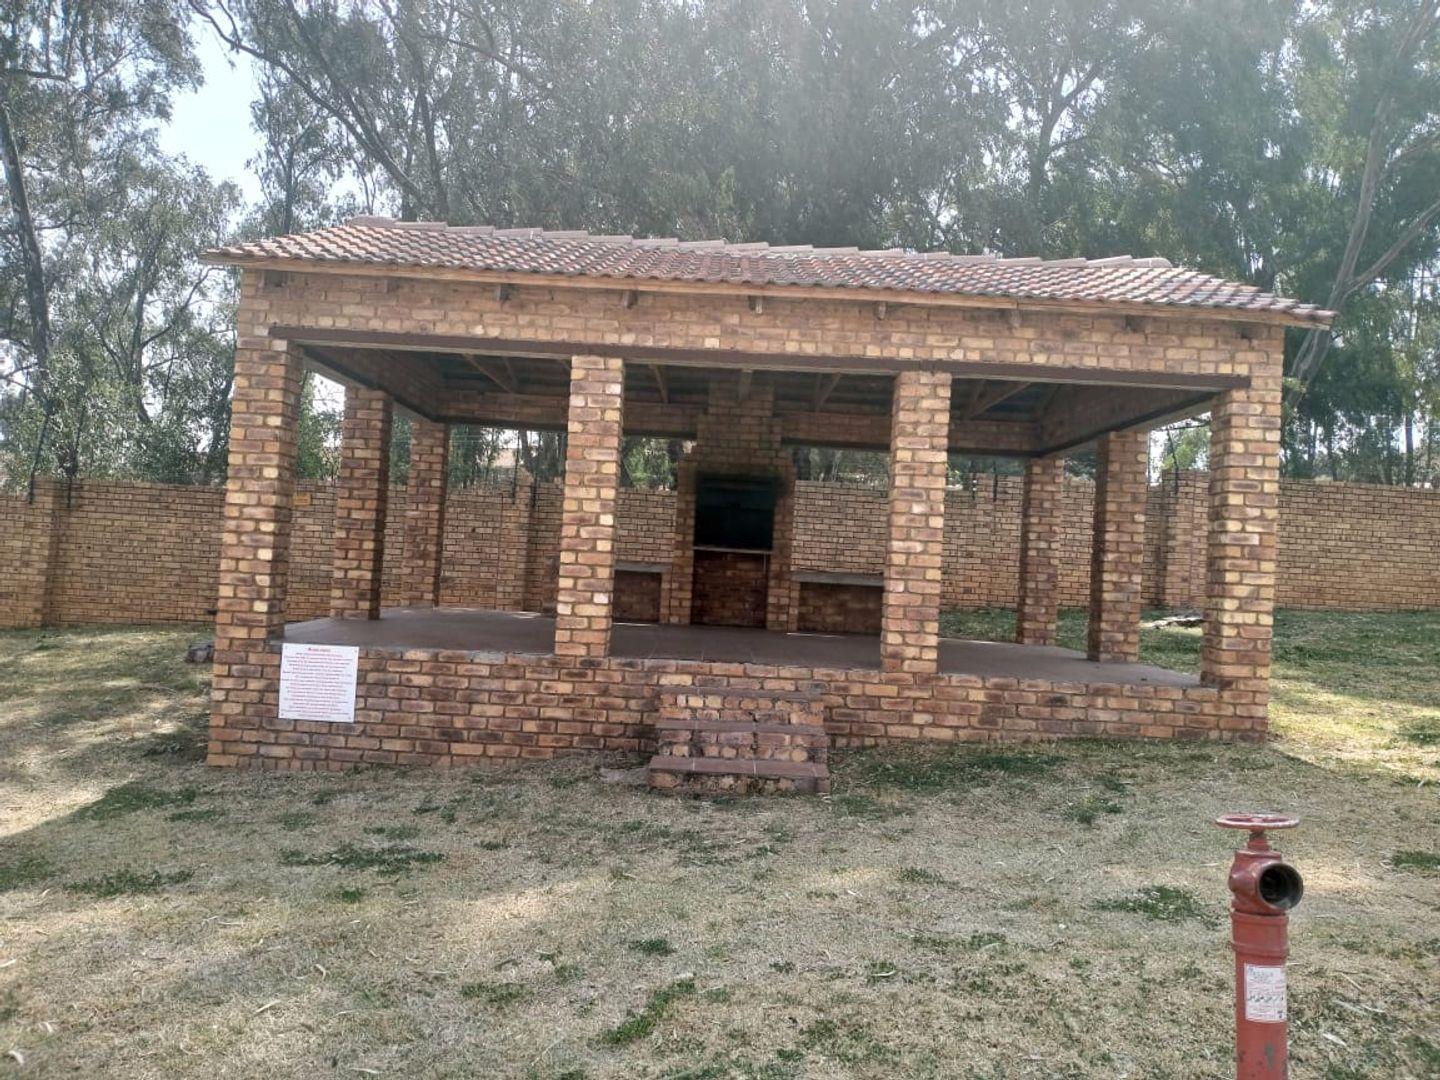 2 Bedroom Property for Sale in Meredale Gauteng